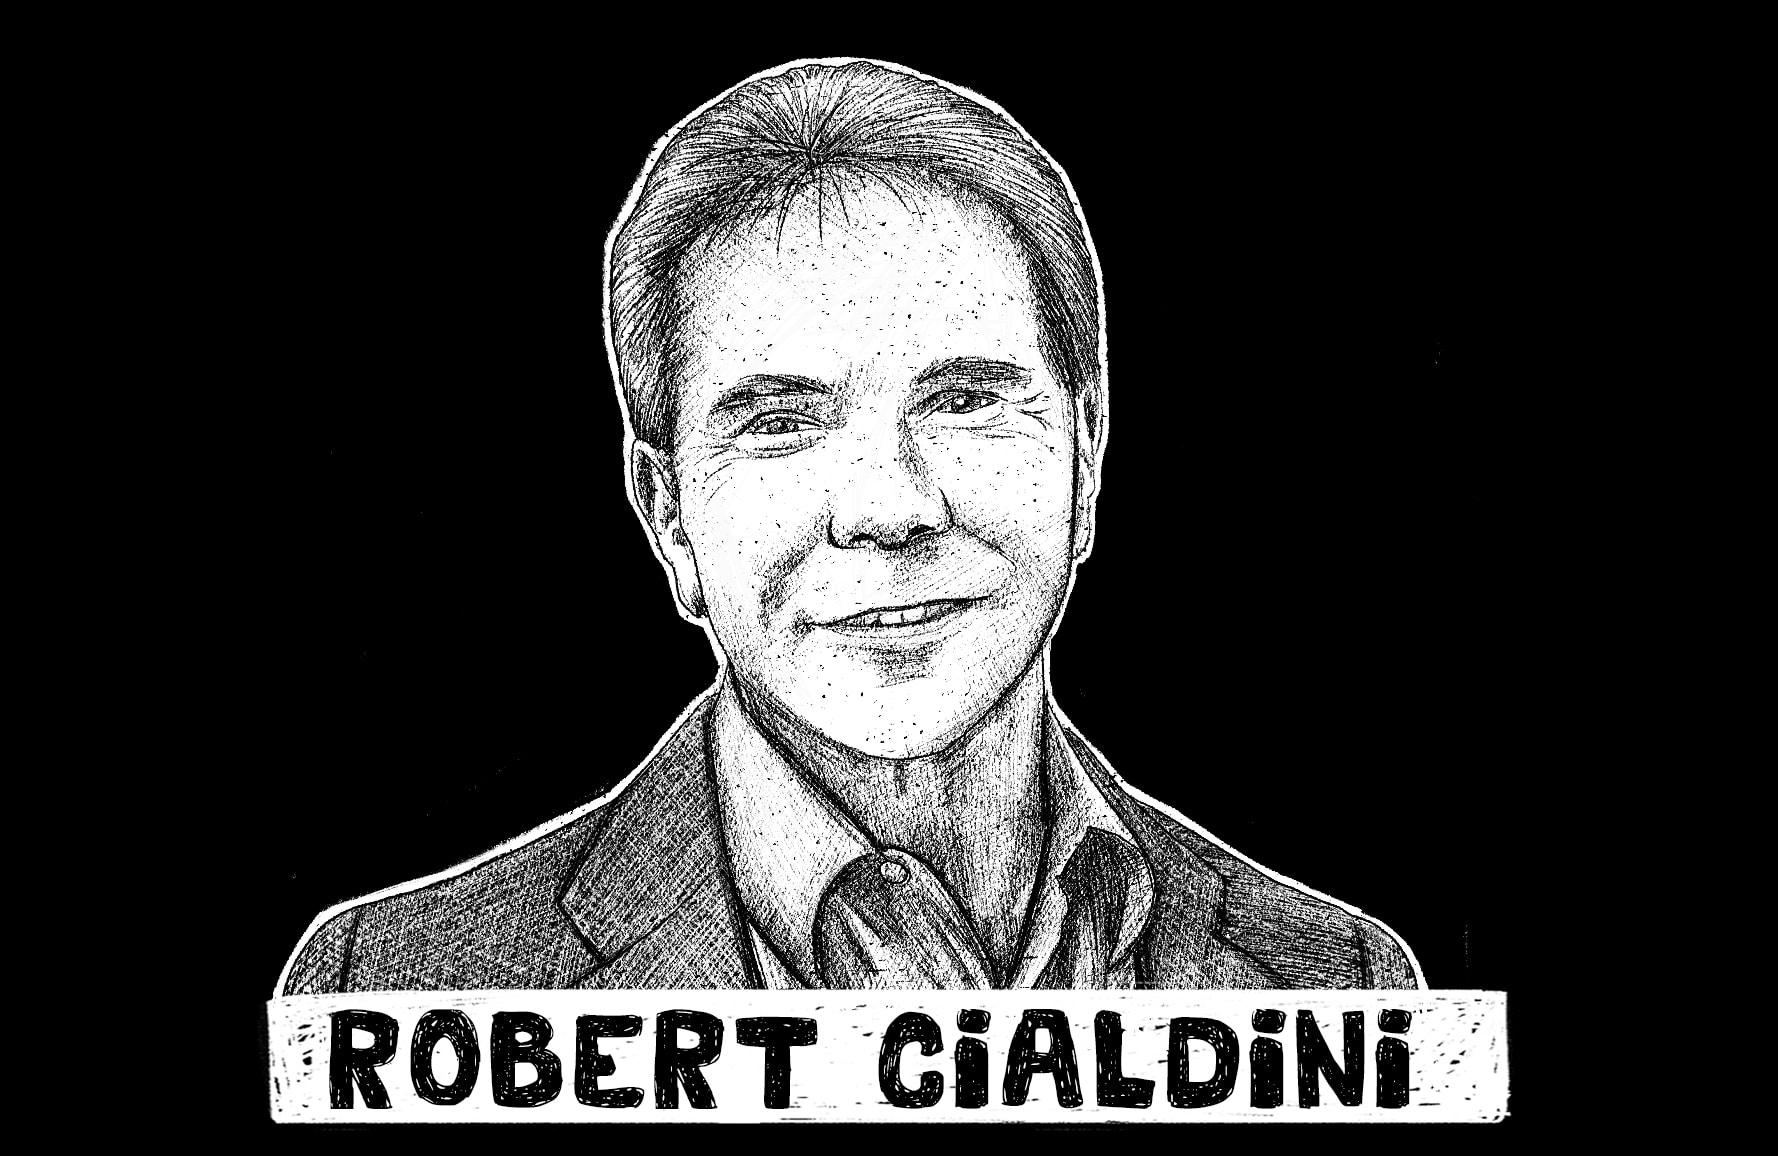 Robert Cialdini